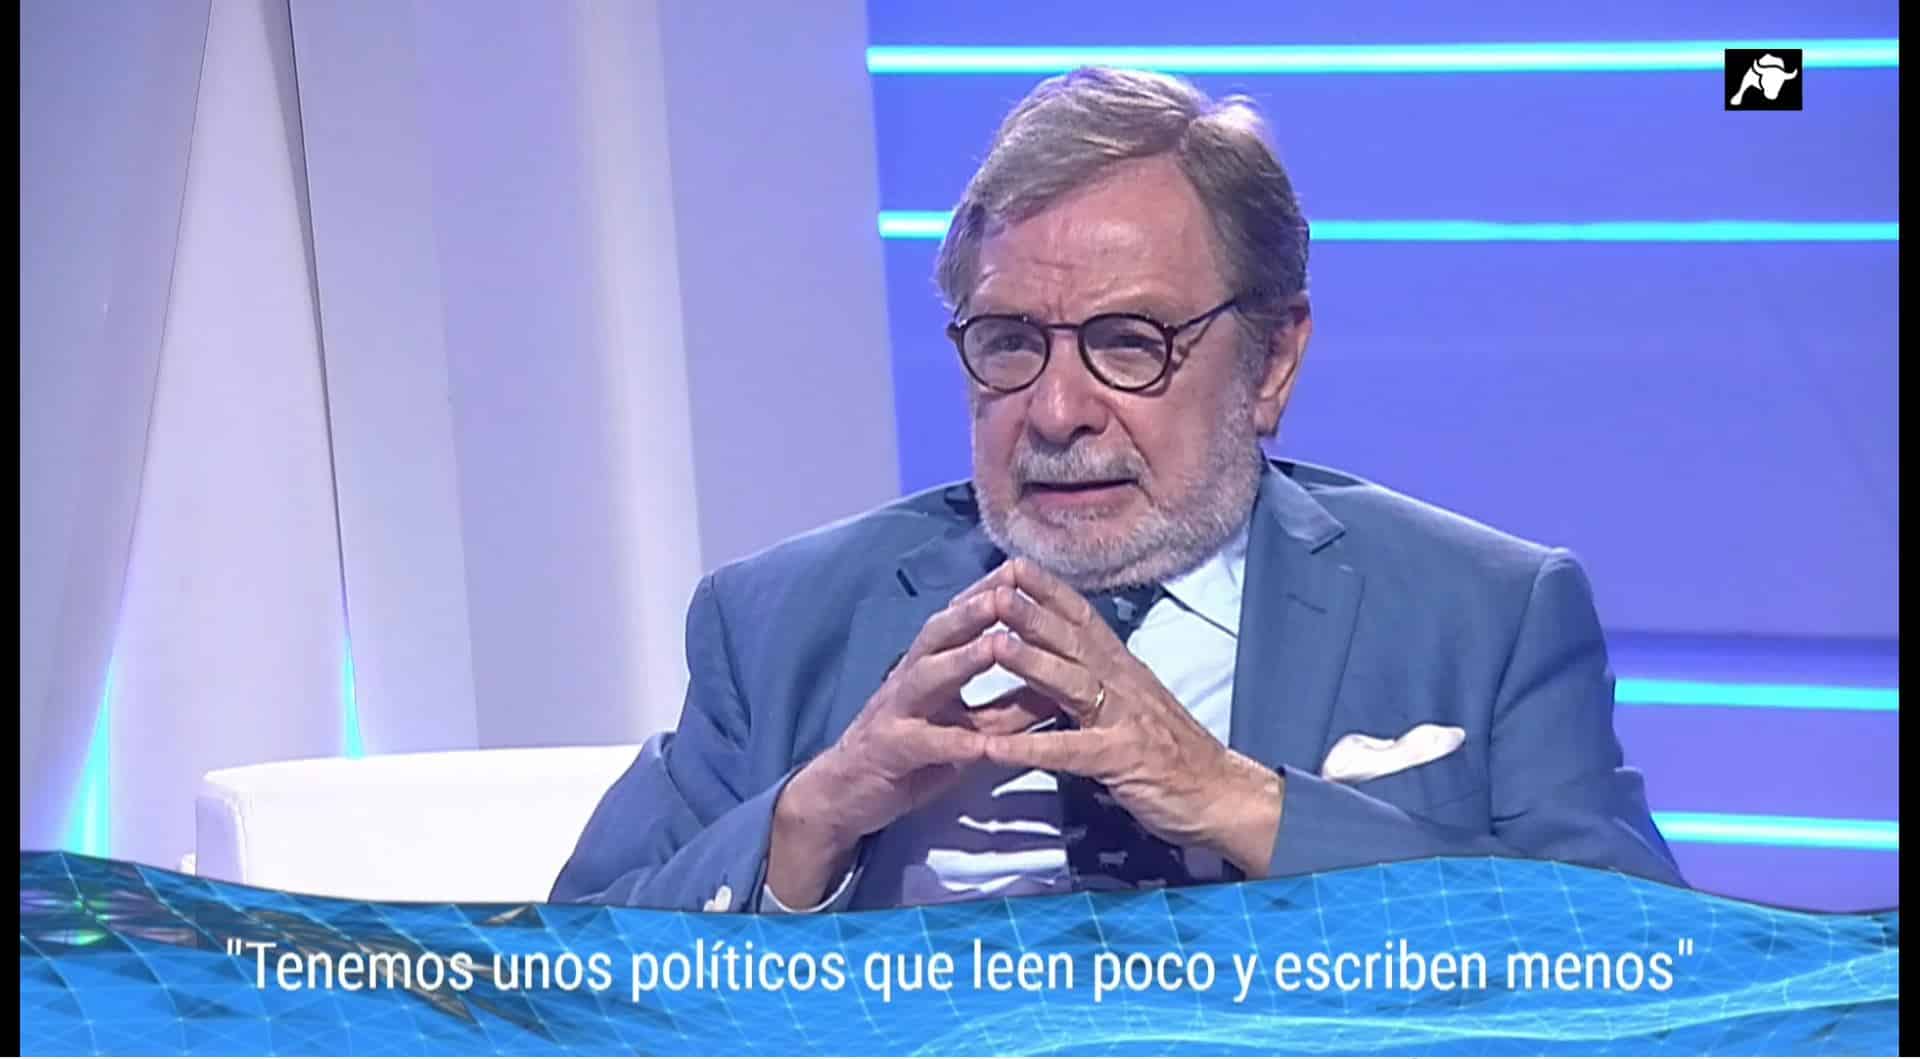  Los problemas reales de los españoles según Juan Luis Cebrián: ¿Estás de acuerdo?